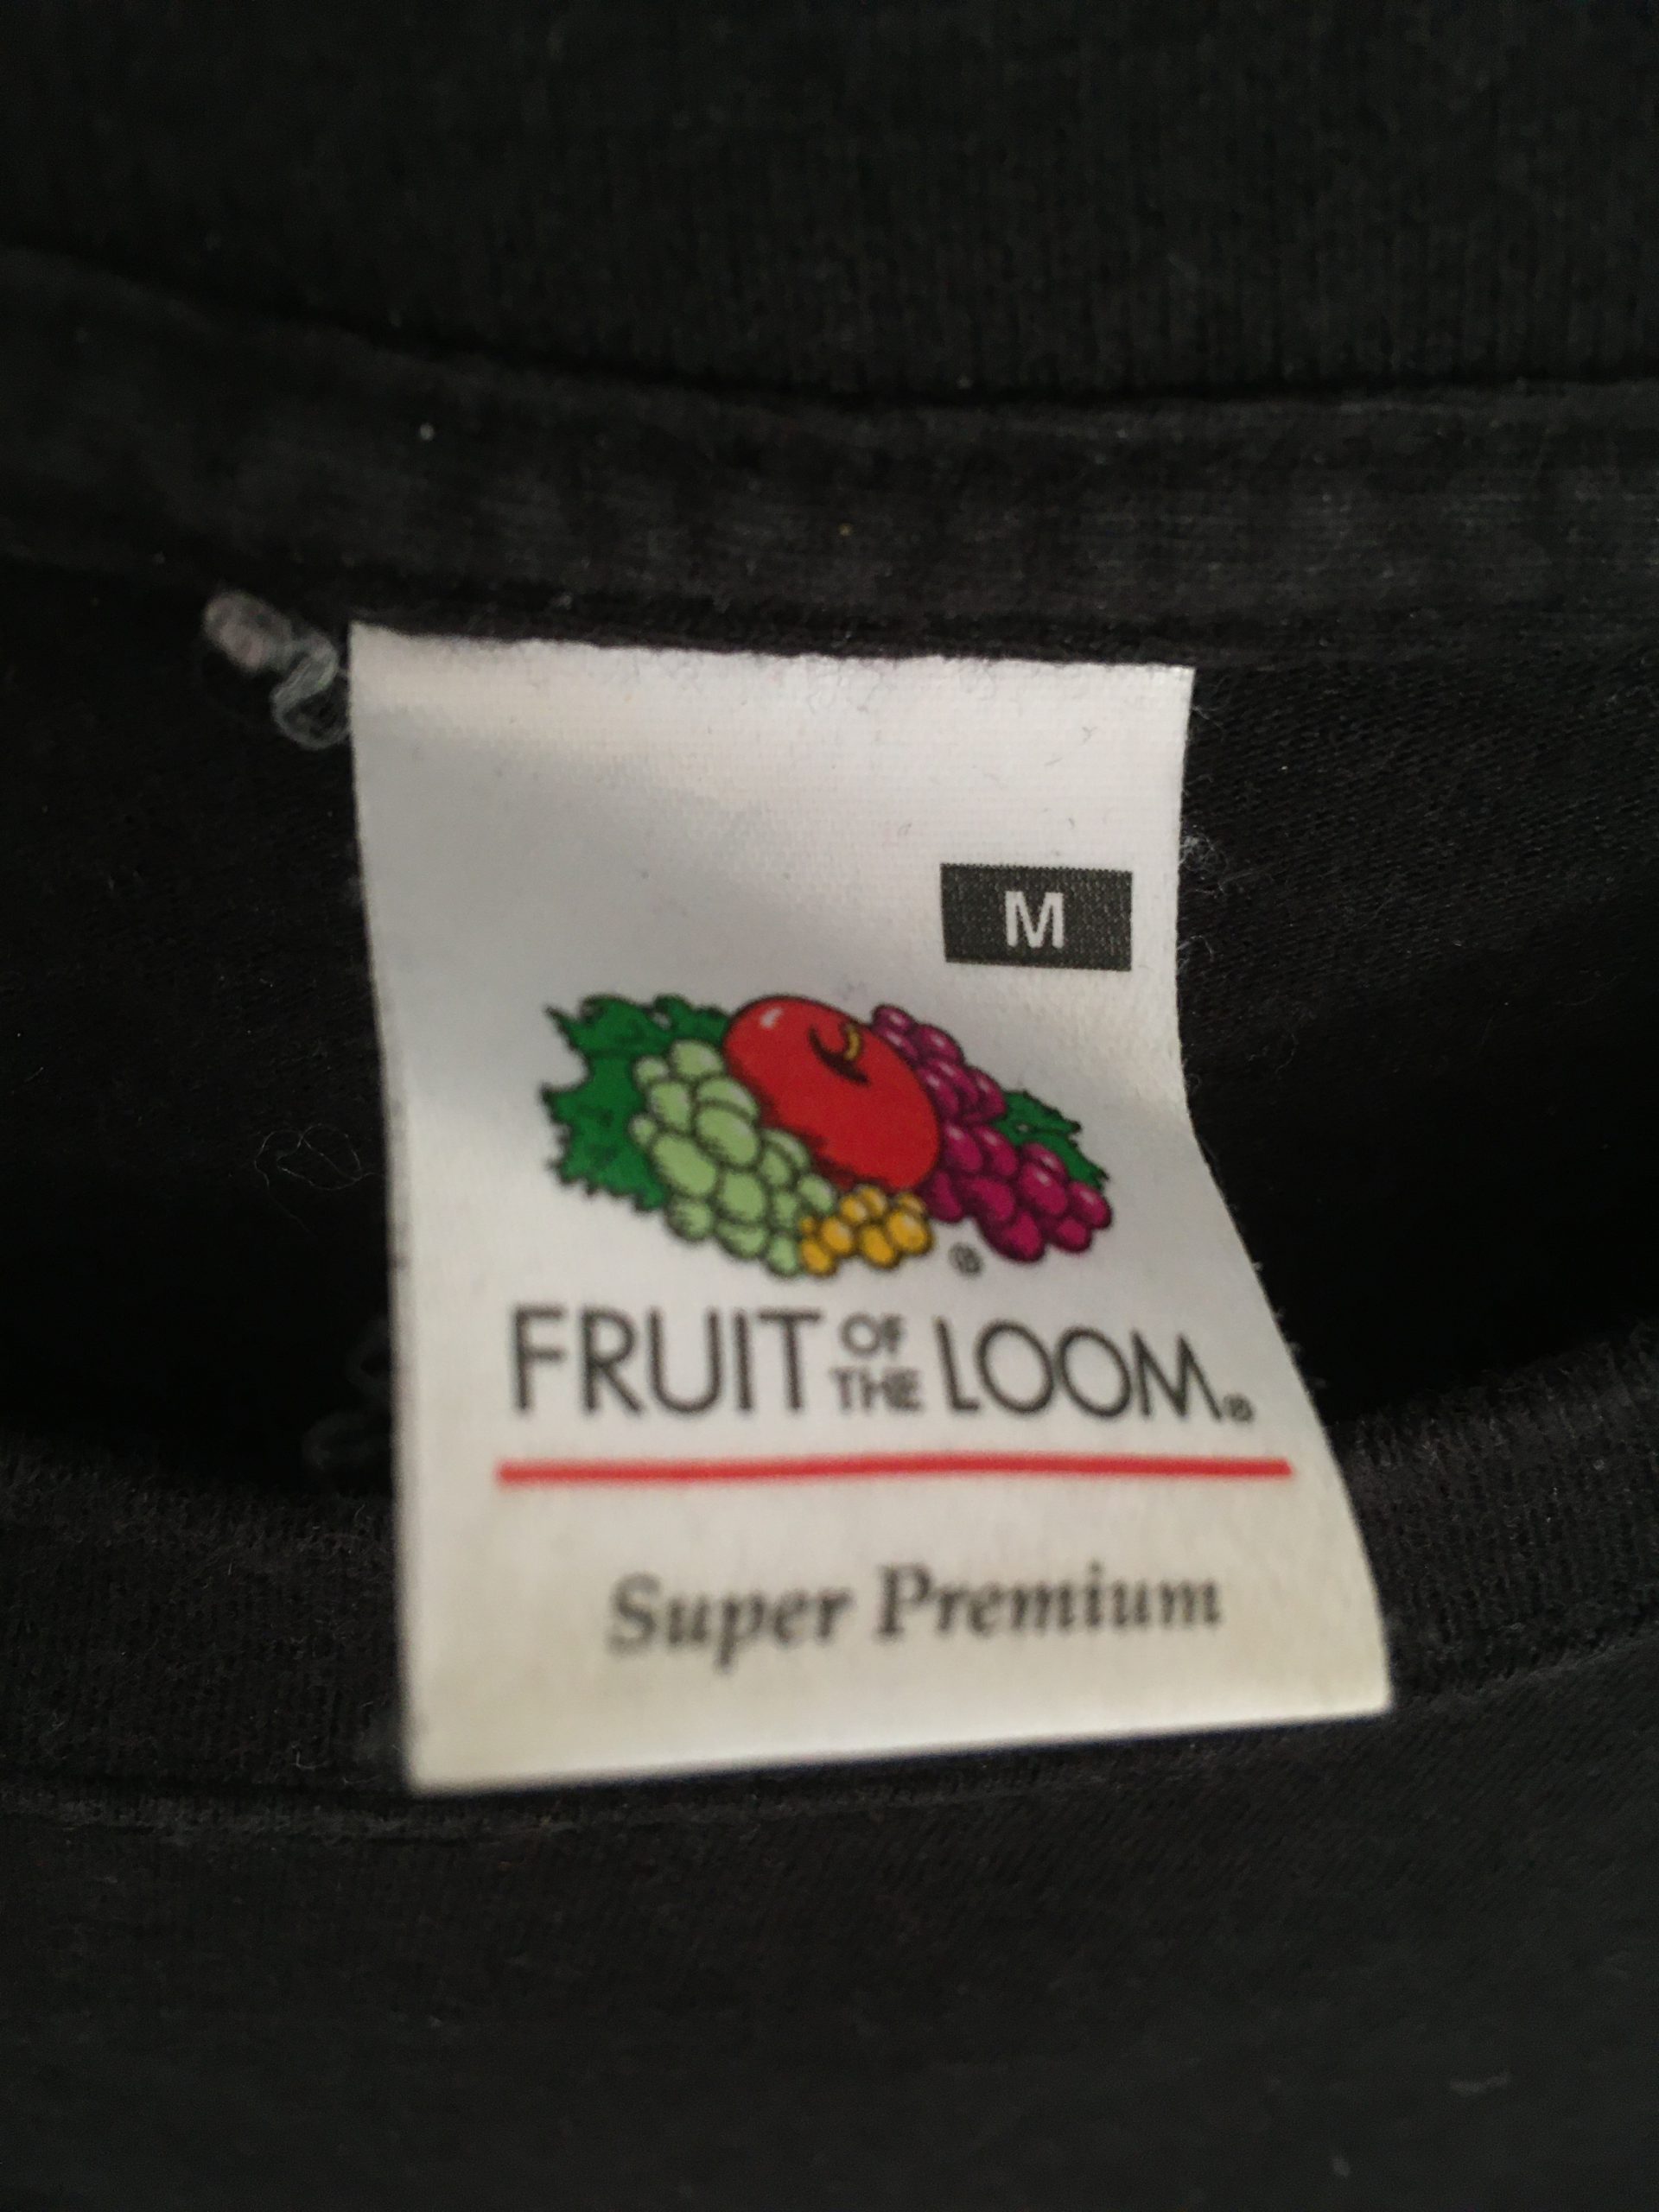 Fruit Of The Loom Super Premium Label